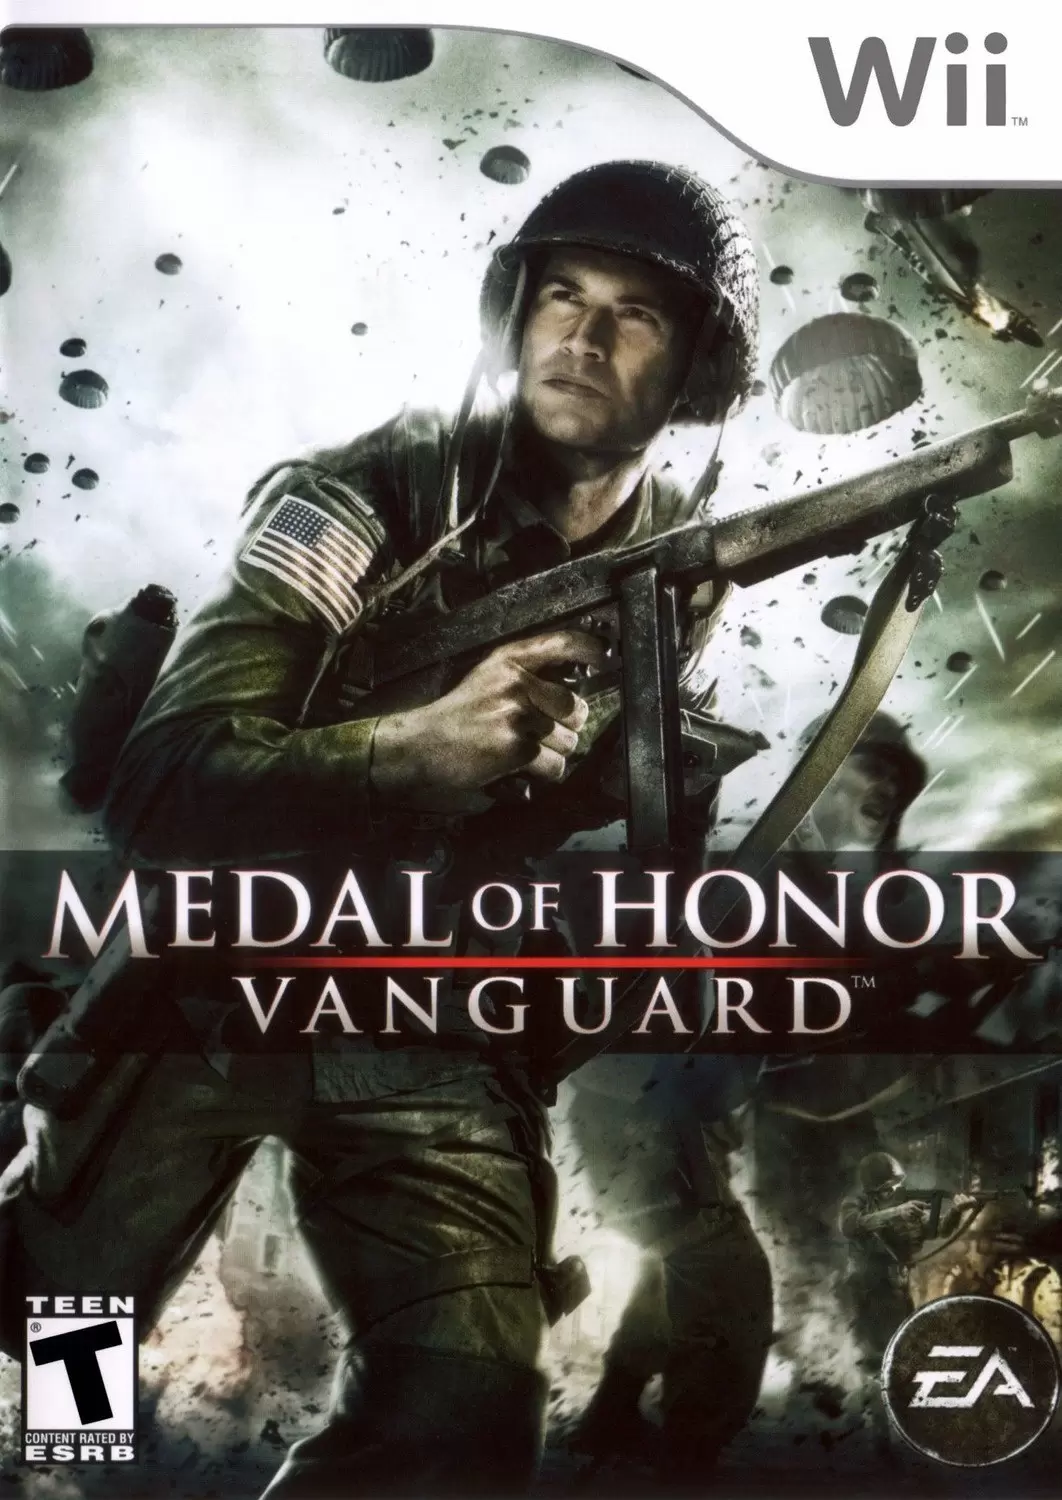 Nintendo Wii Games - Medal of Honor: Vanguard